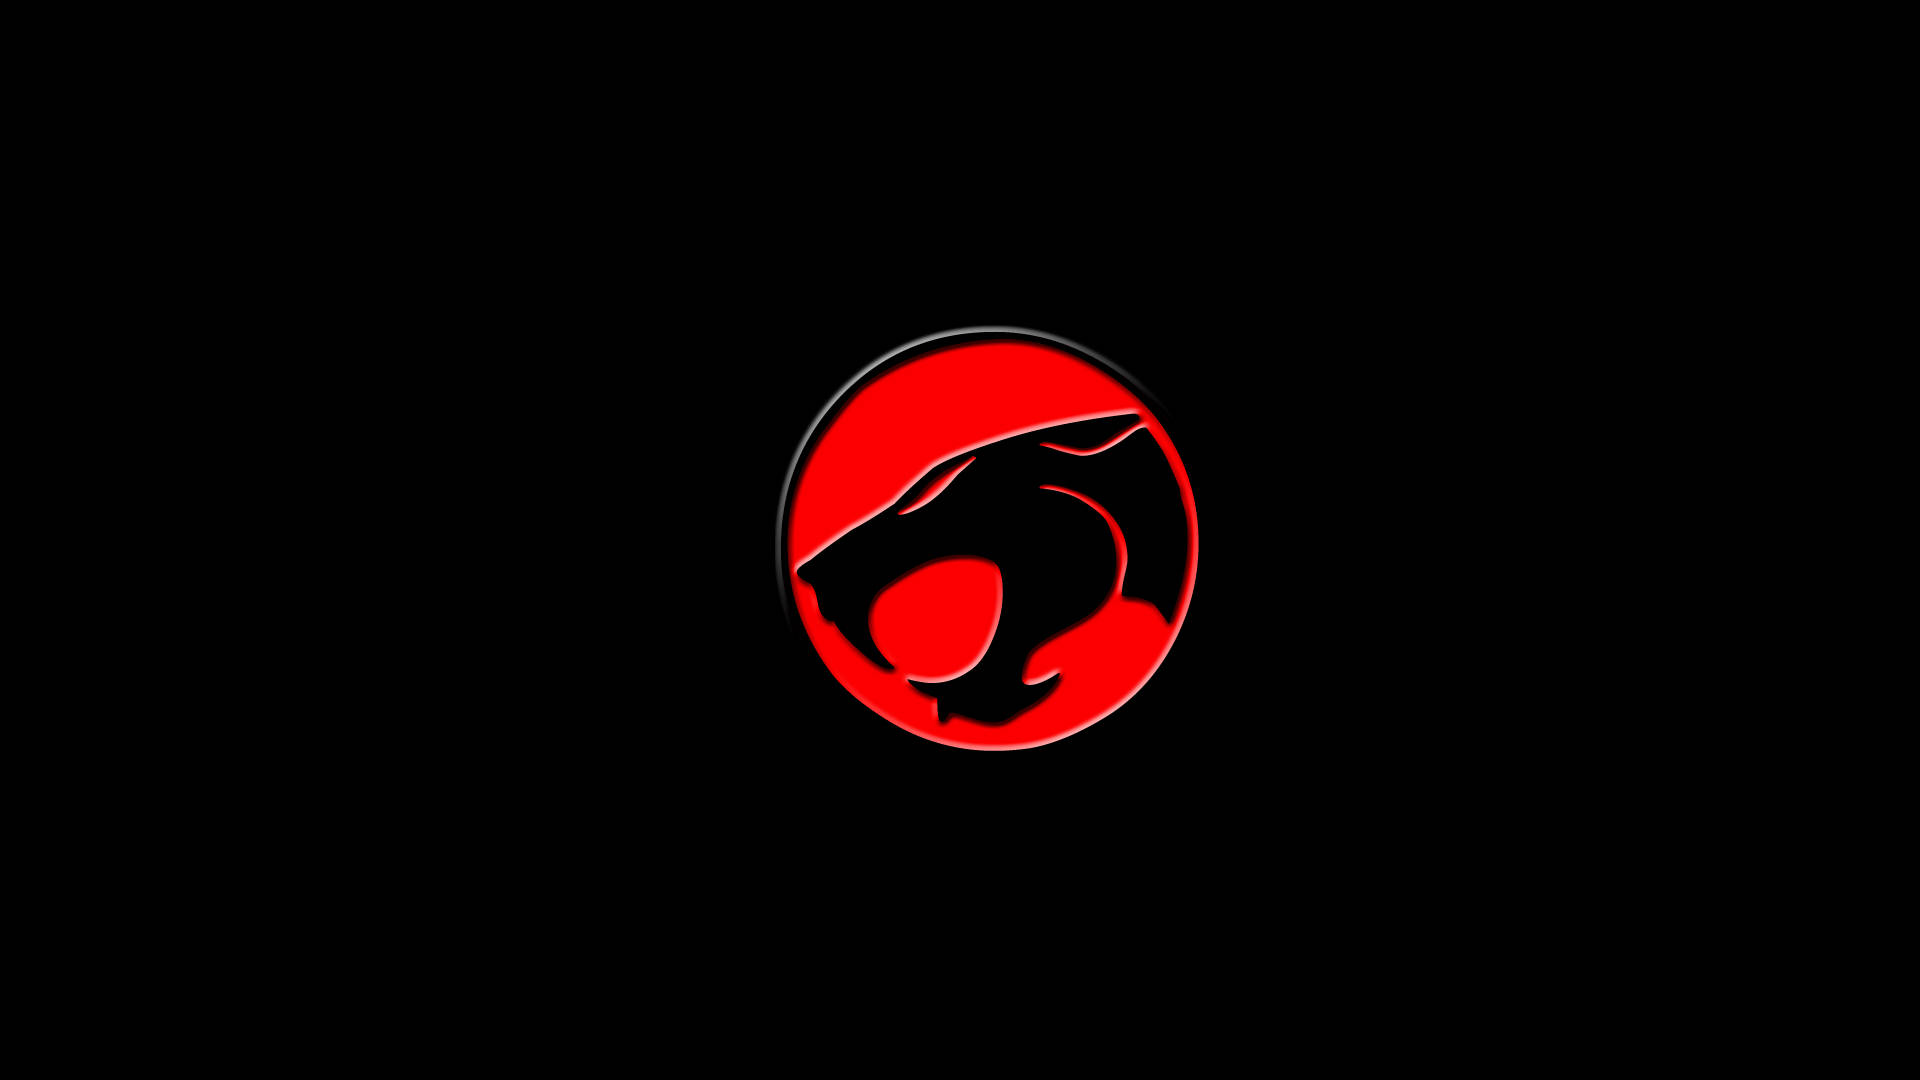 Minimalistic Thundercats Logo Background